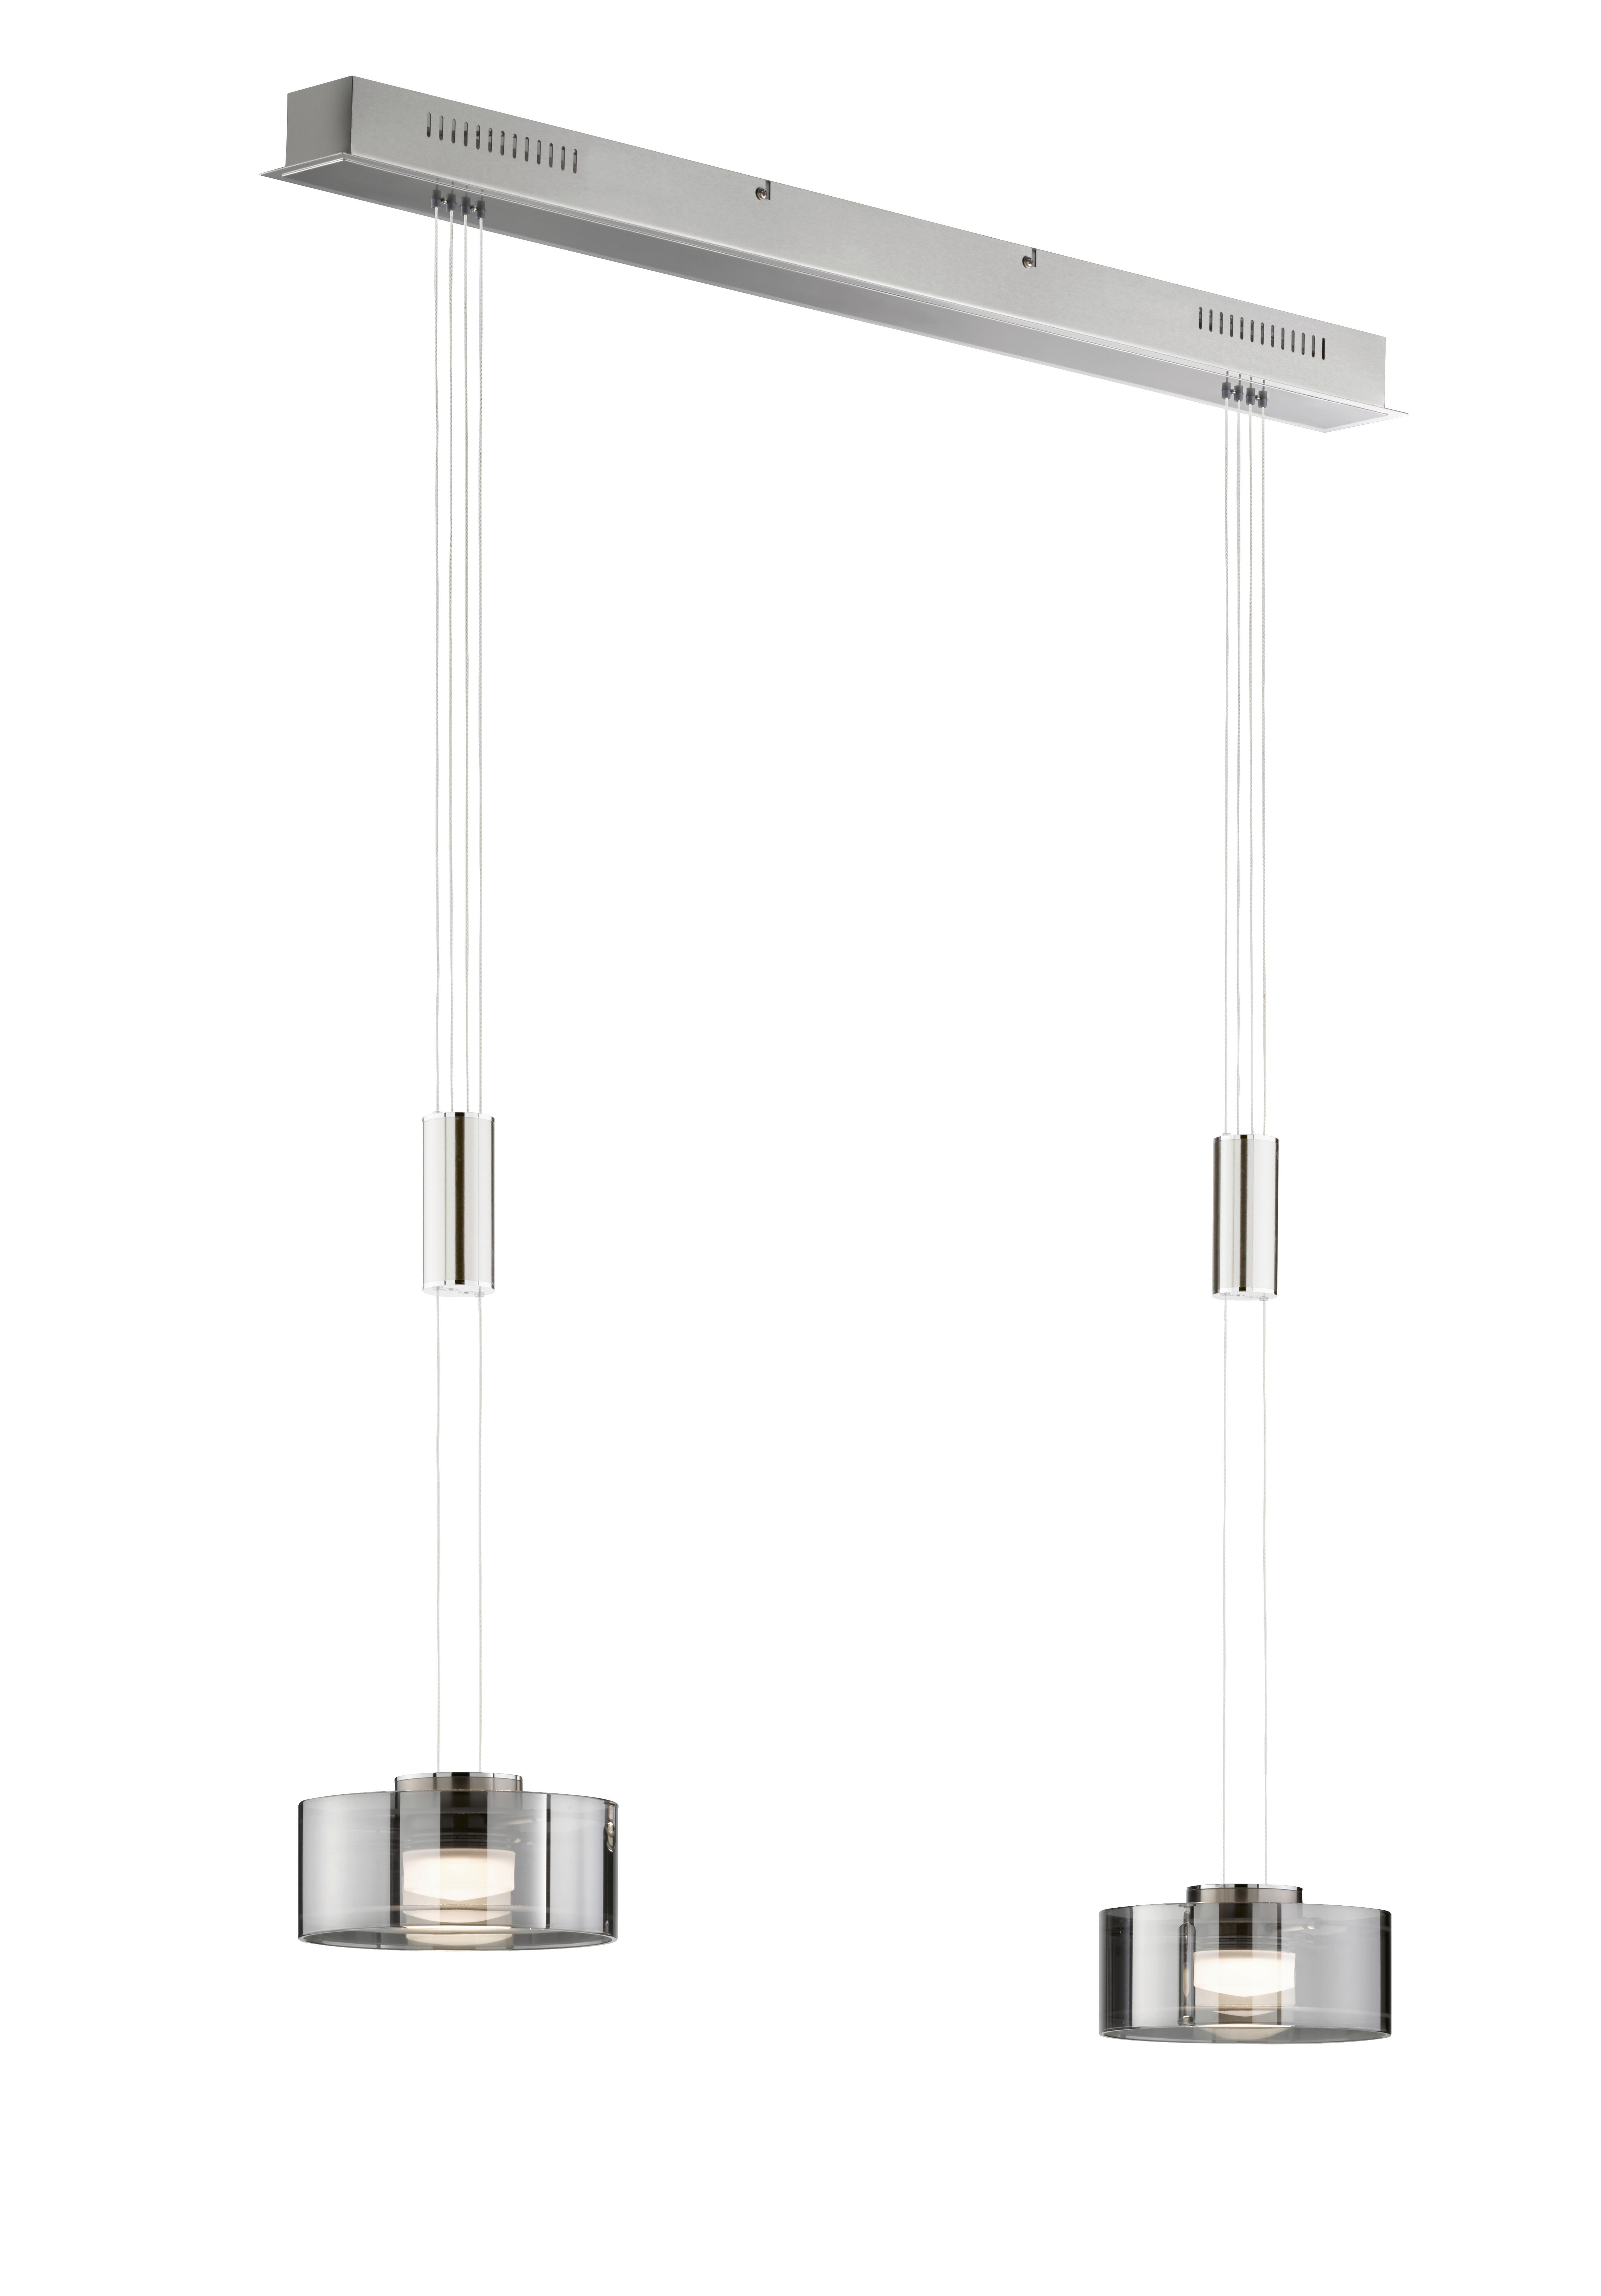 LED-HÄNGELEUCHTE Lavin 64/20/150 cm   - Nickelfarben, Design, Glas/Metall (64/20/150cm) - Fischer & Honsel